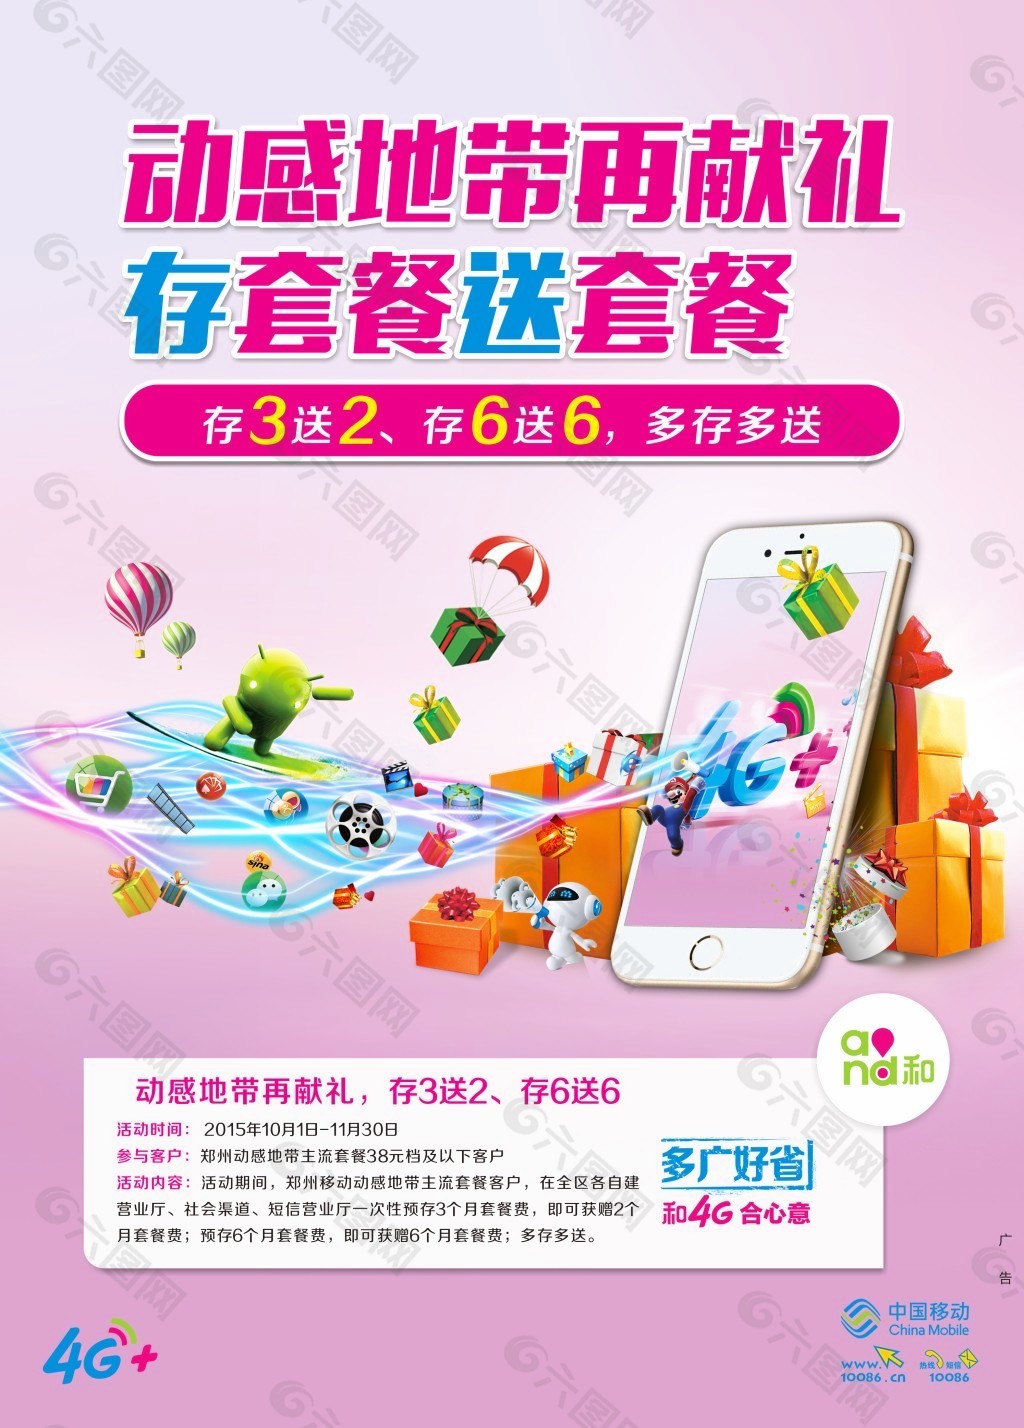 中国移动和4G海报设计